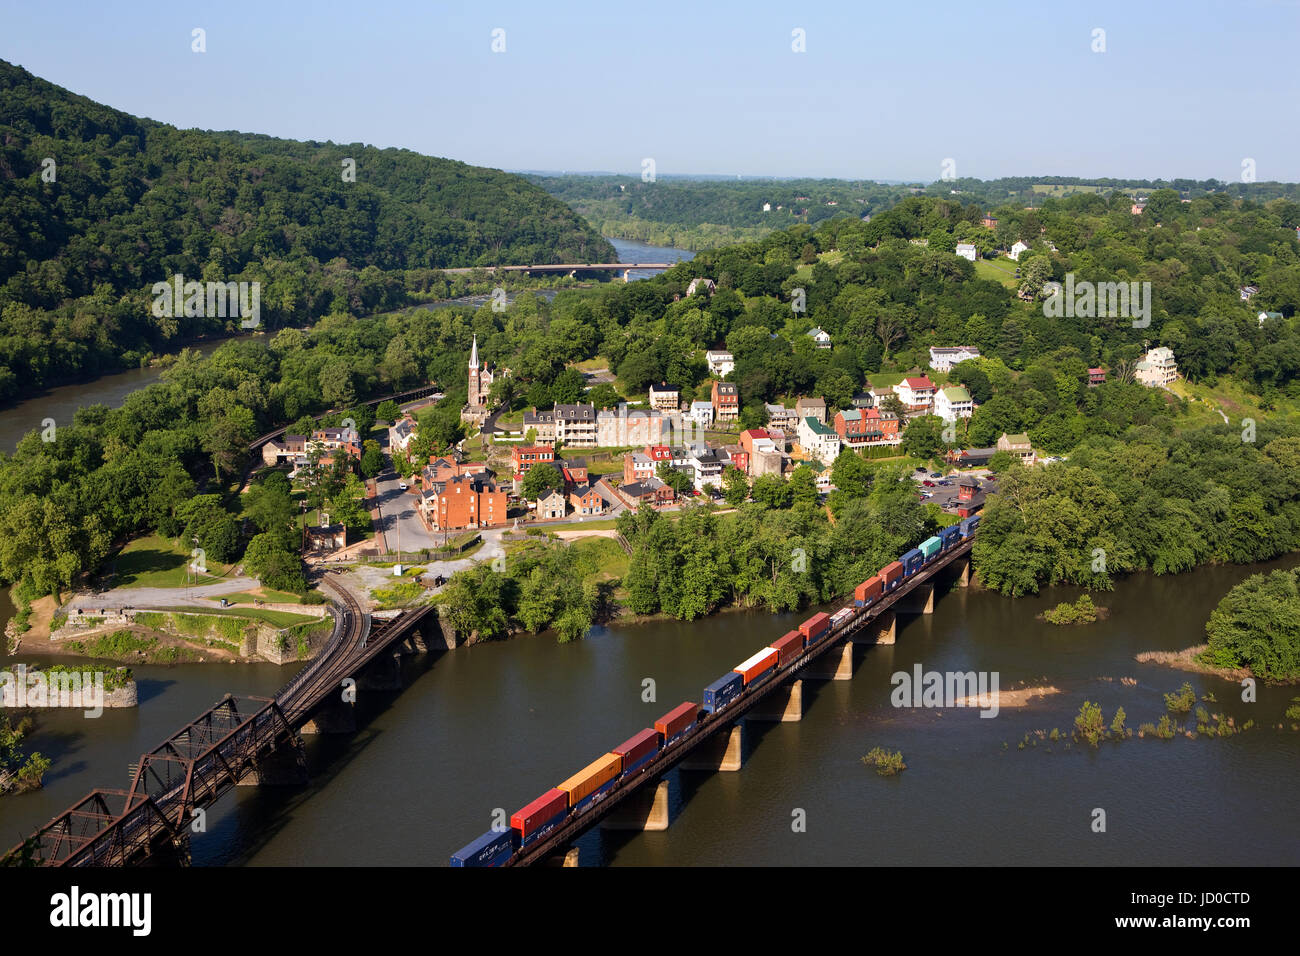 Un treno rotoli attraverso il Fiume Shenandoah in una veduta aerea della città di harpers Ferry, West Virginia, che include harpers Ferry National Histori Foto Stock